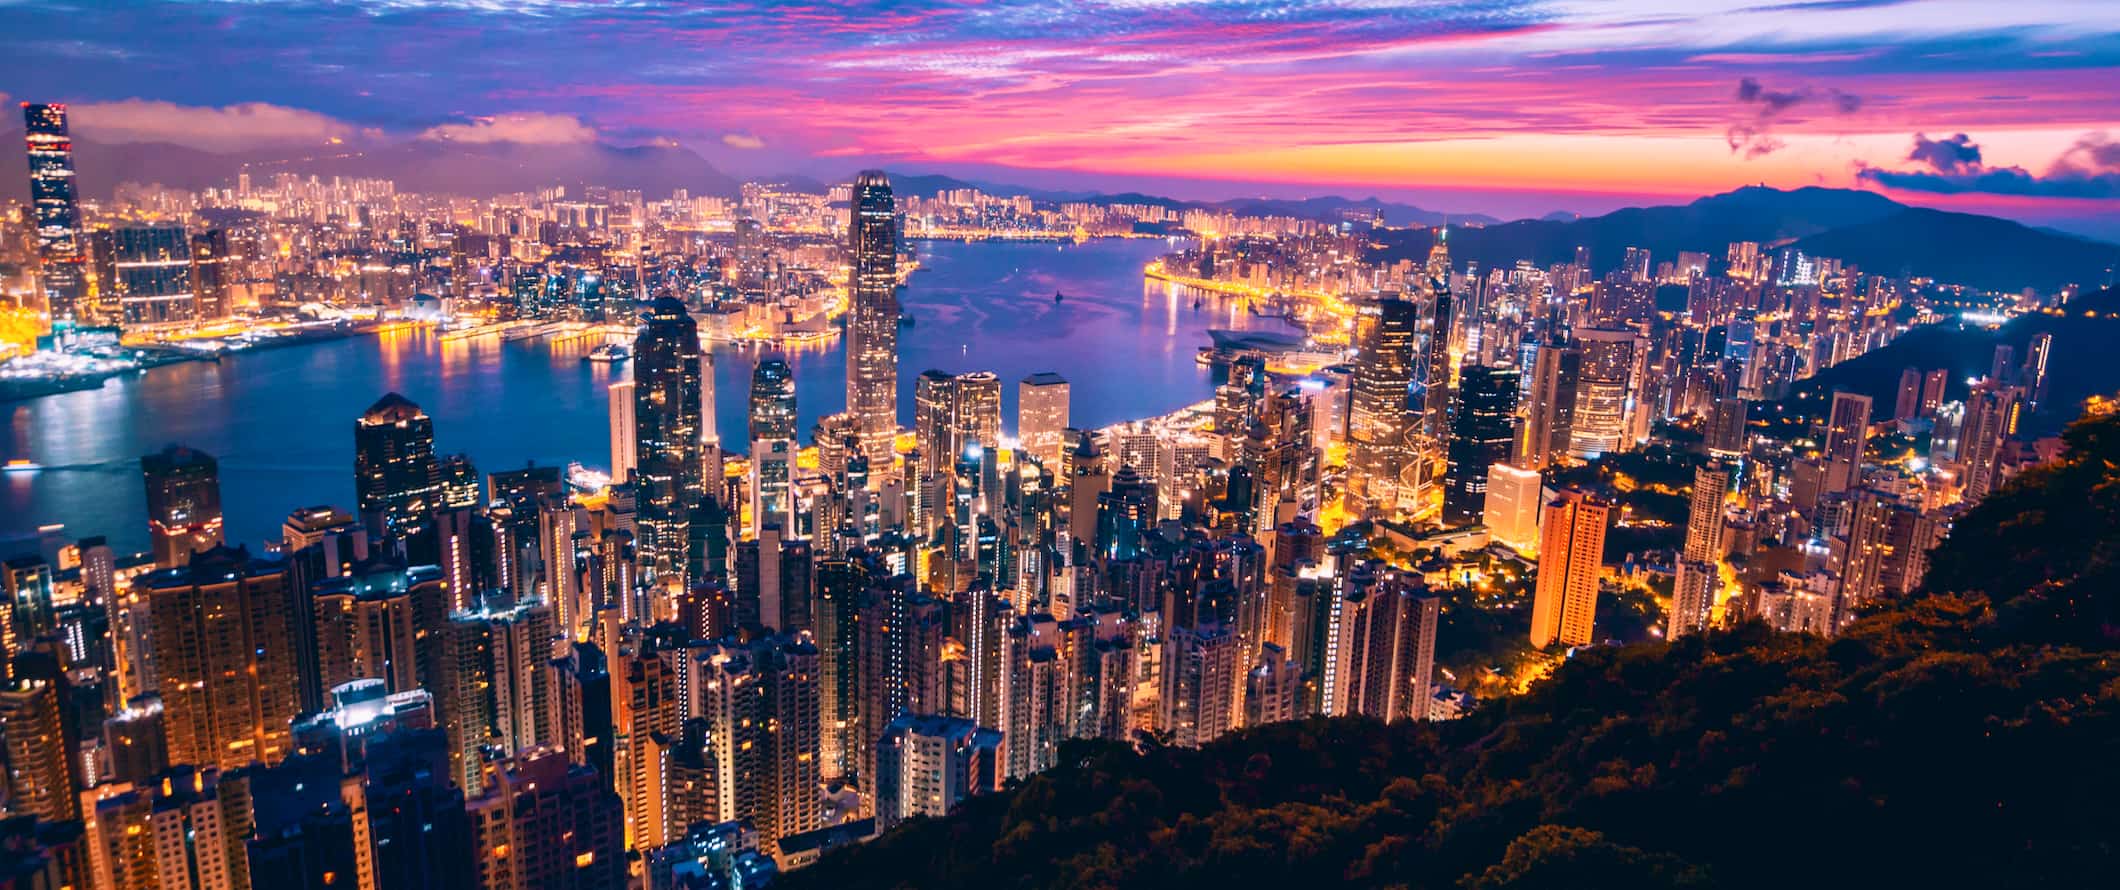 Hong Kong's stunning skyline